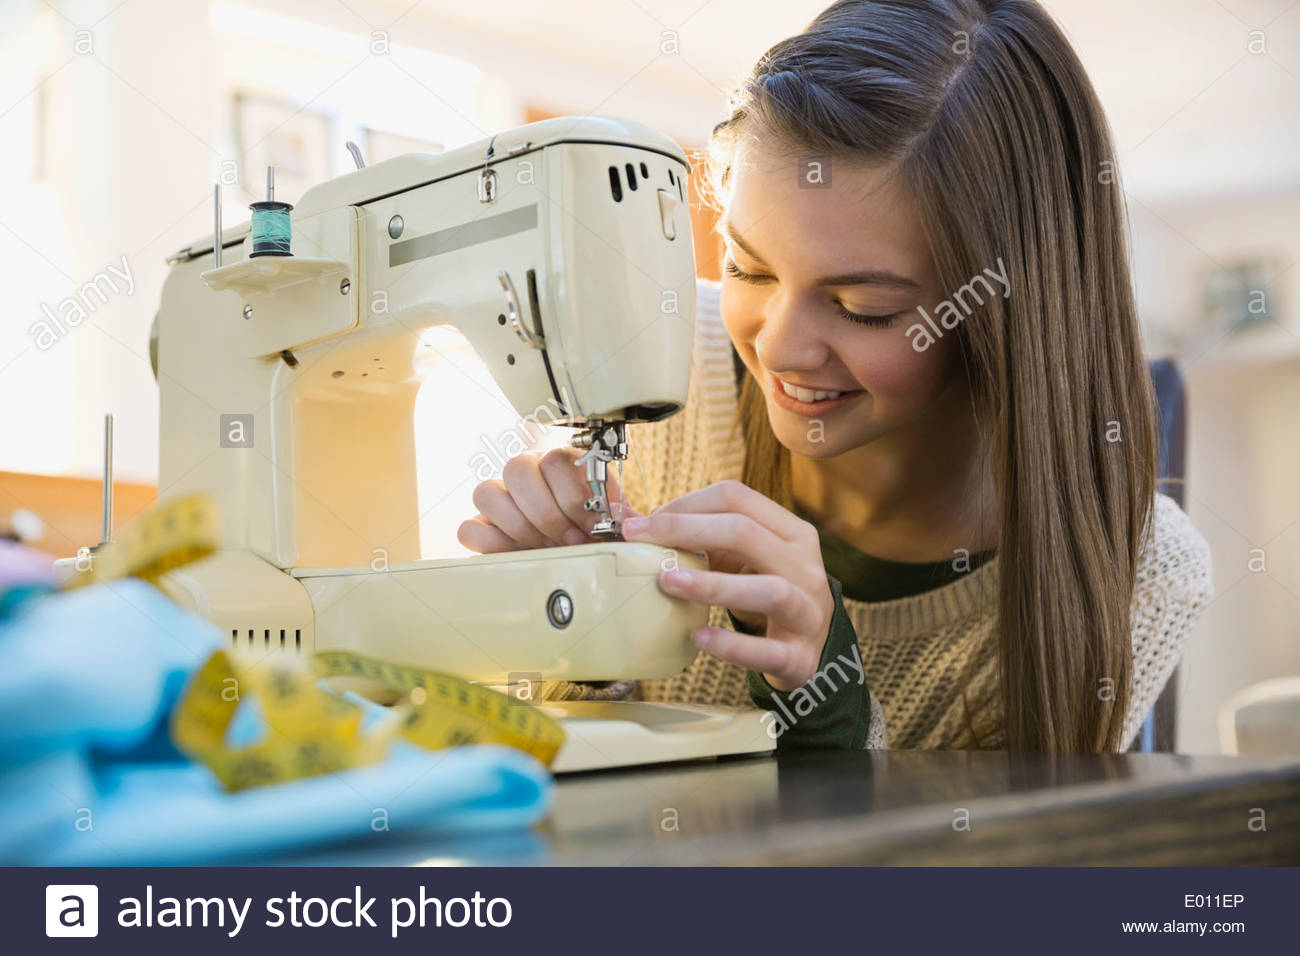 Girl using sewing machine Stock Photo